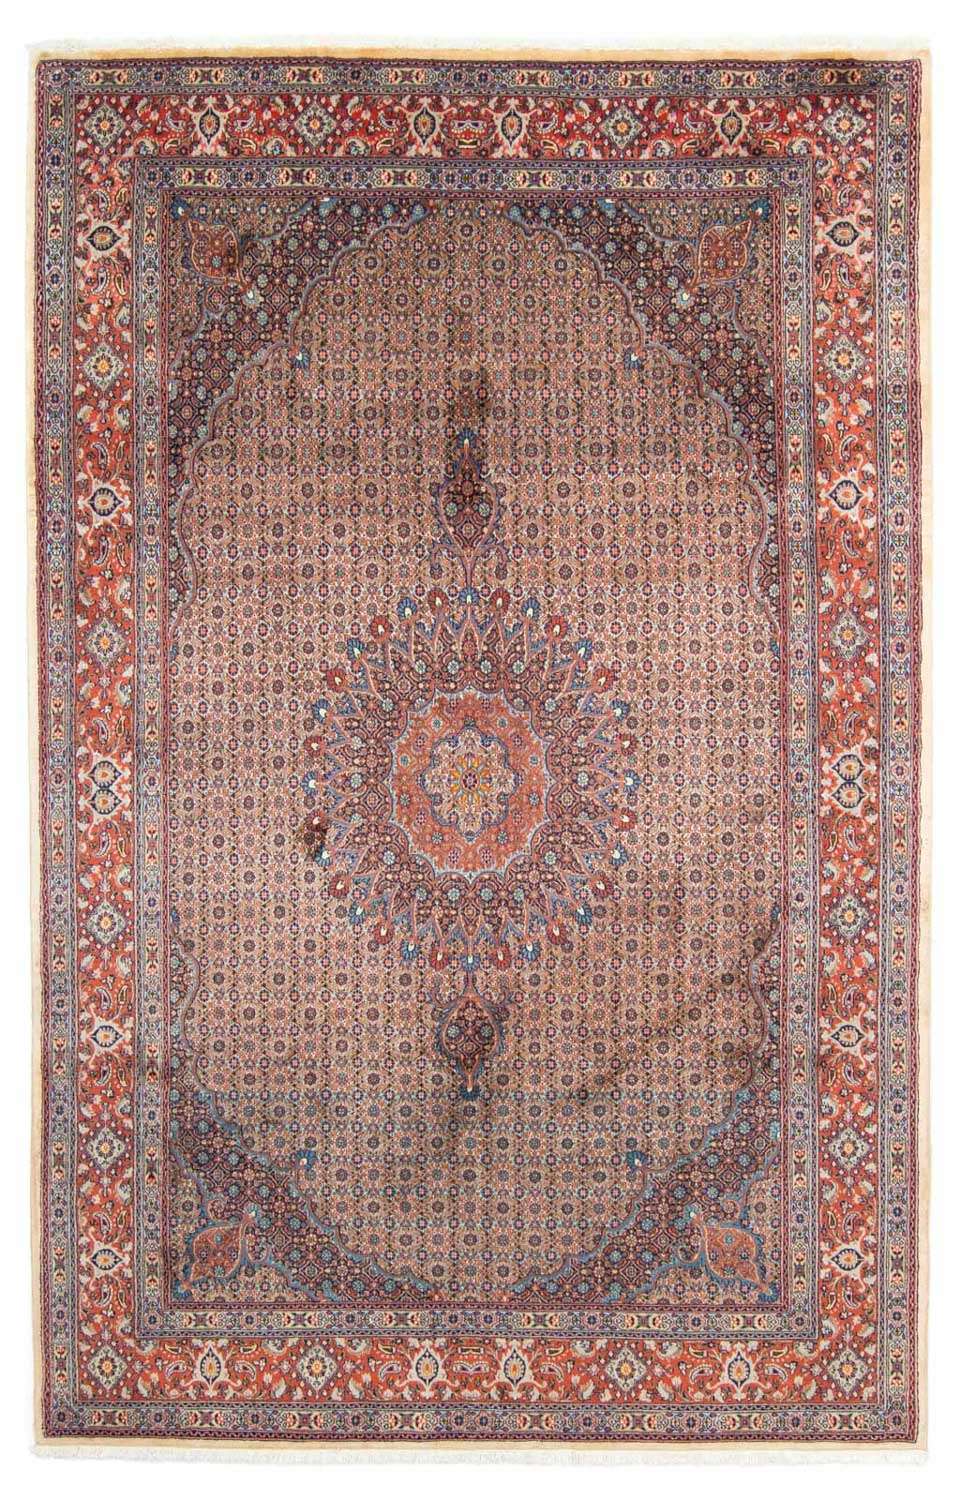 Tappeto Persero - Classico - 293 x 198 cm - rosso chiaro